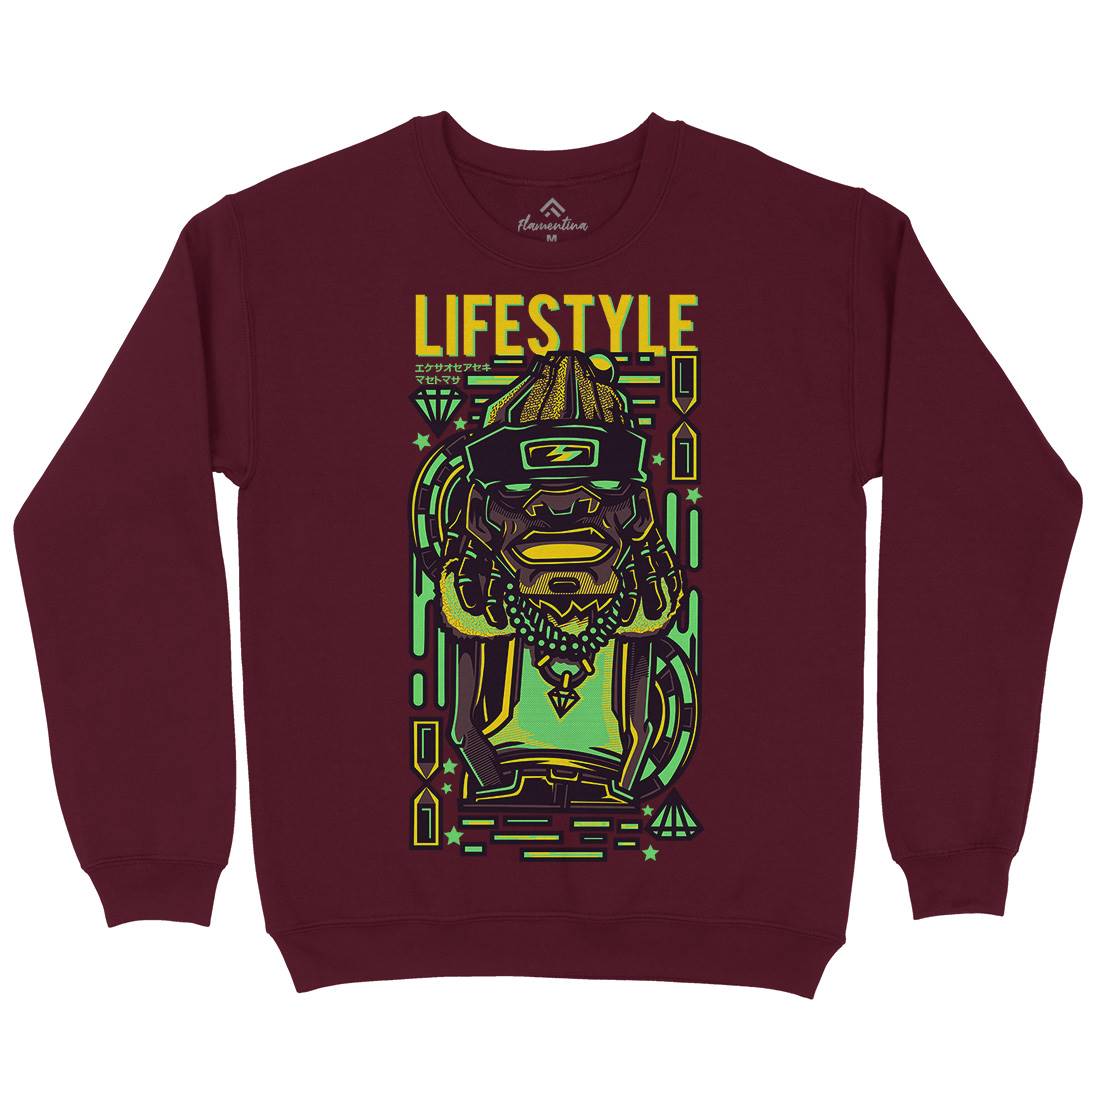 Life Style Kids Crew Neck Sweatshirt Retro D636